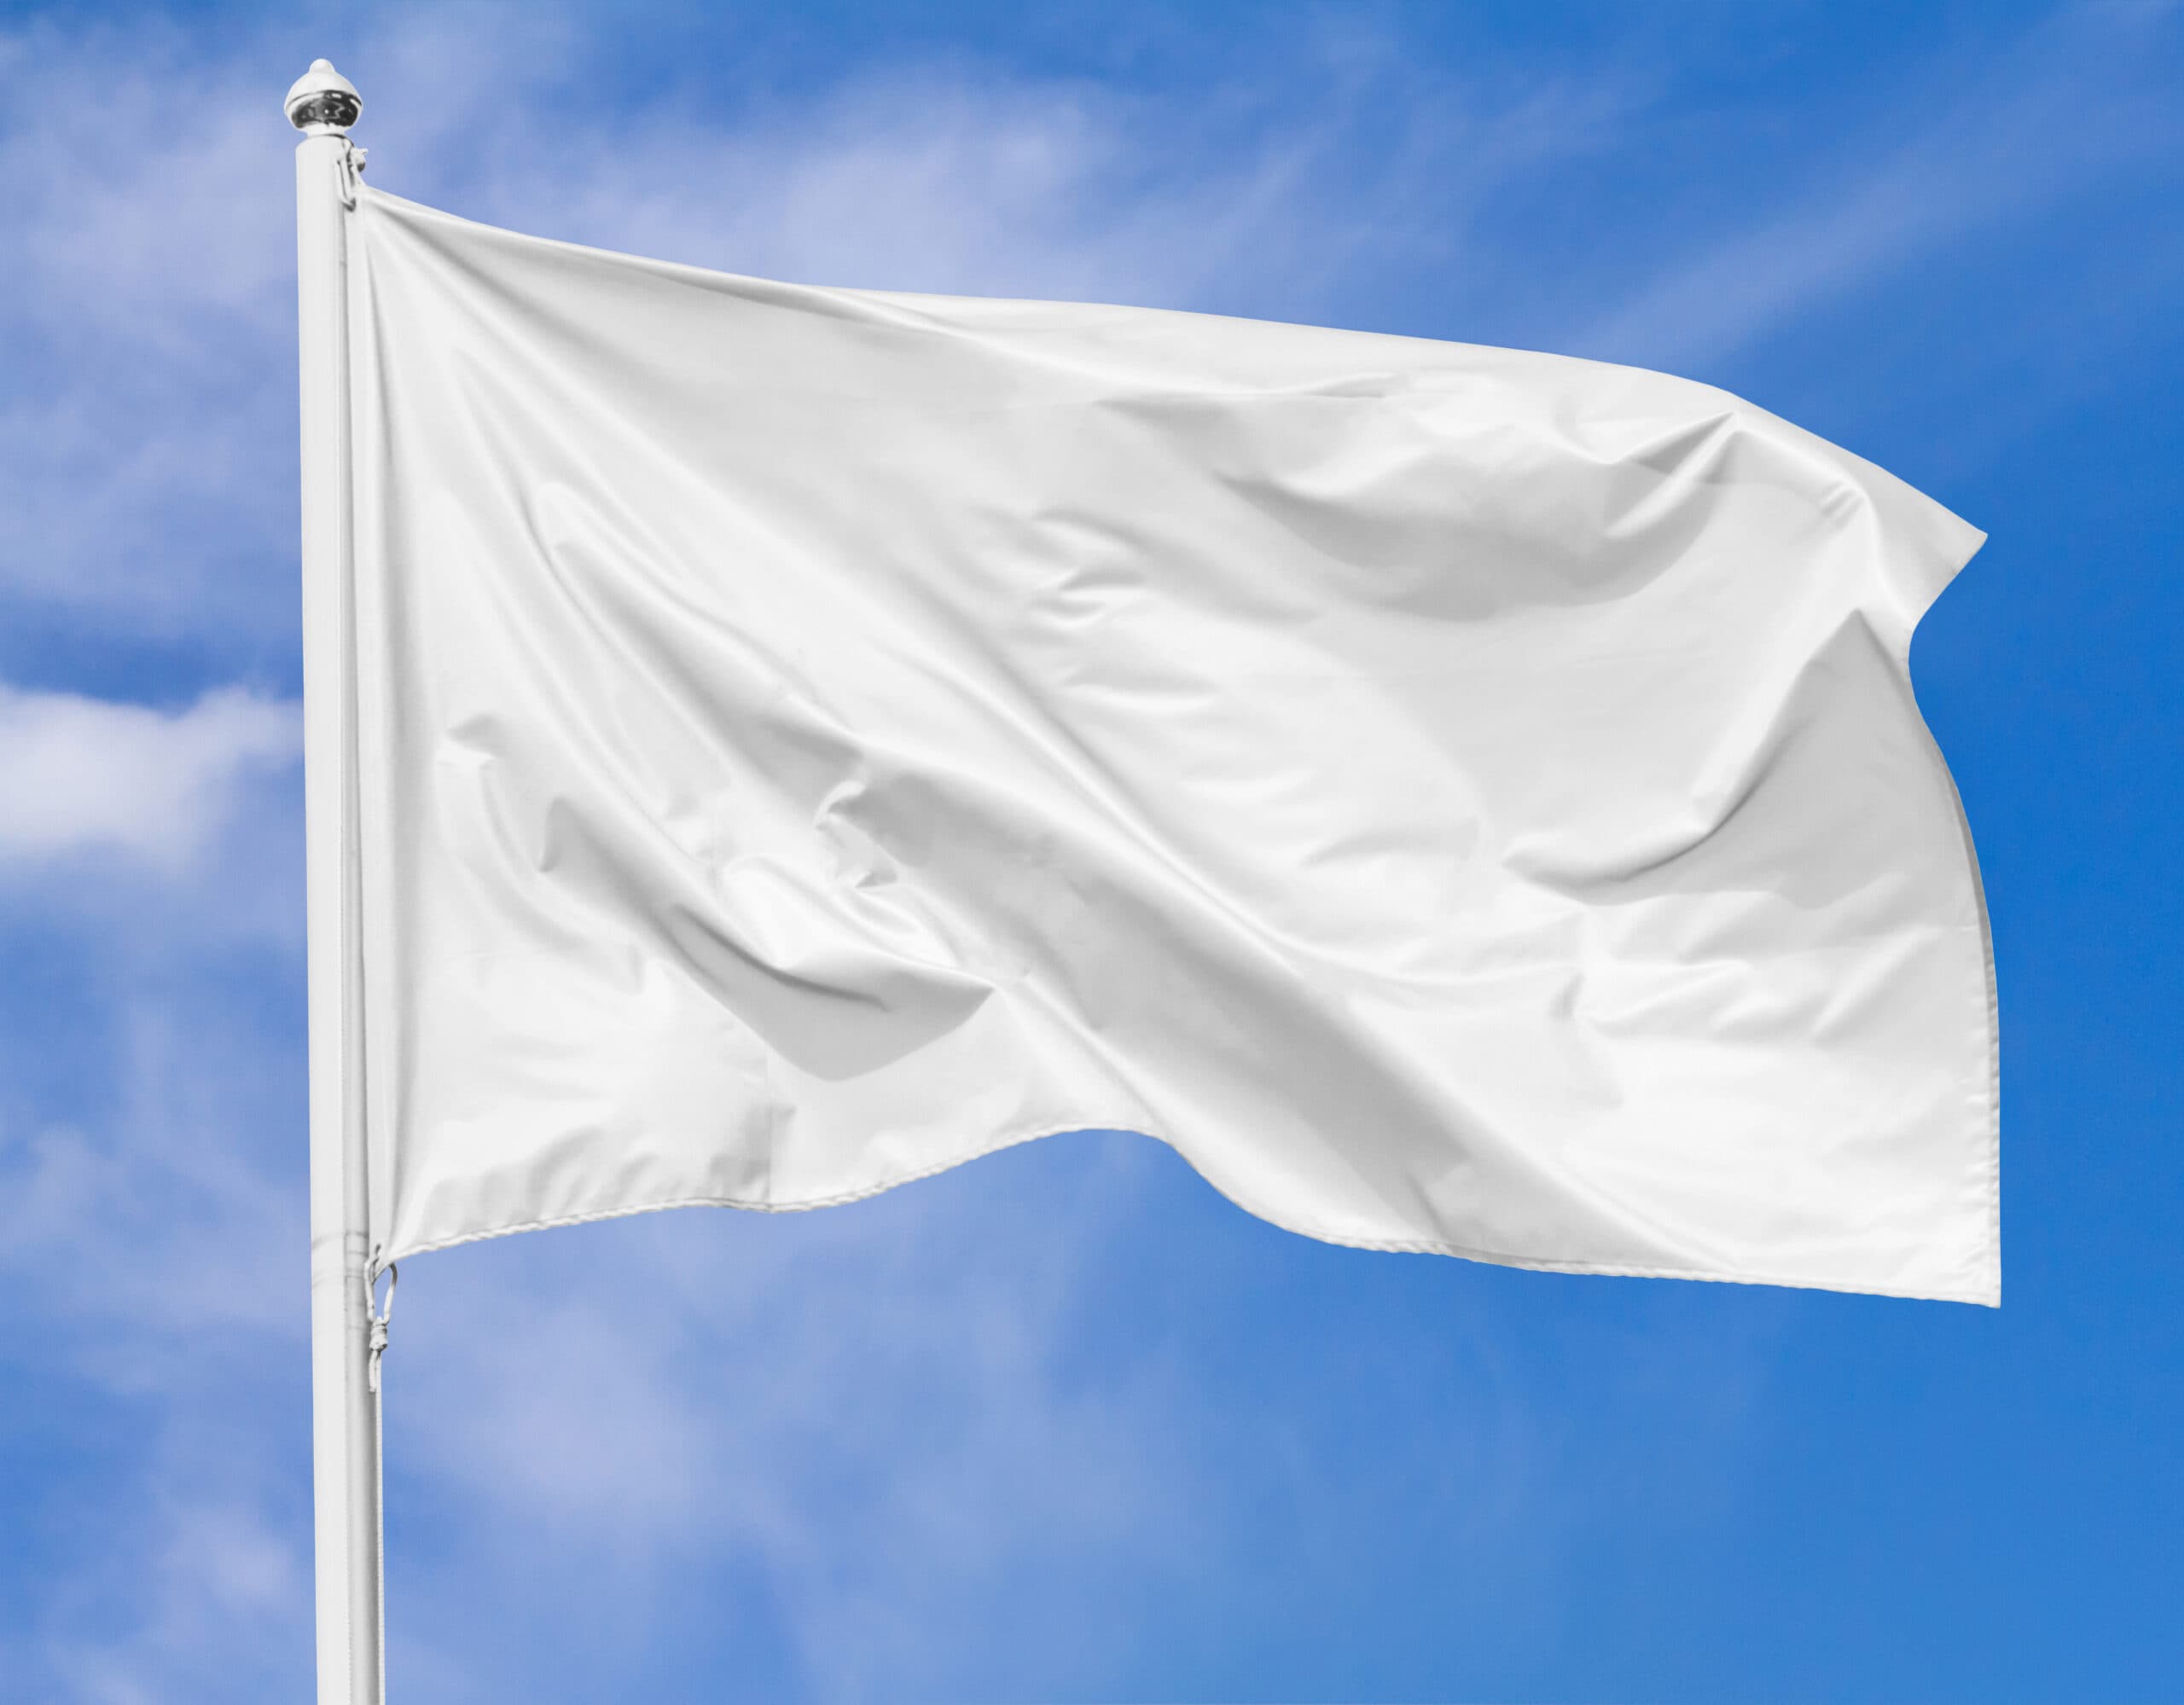 למה עסקים רבים מרימים דגל לבן?